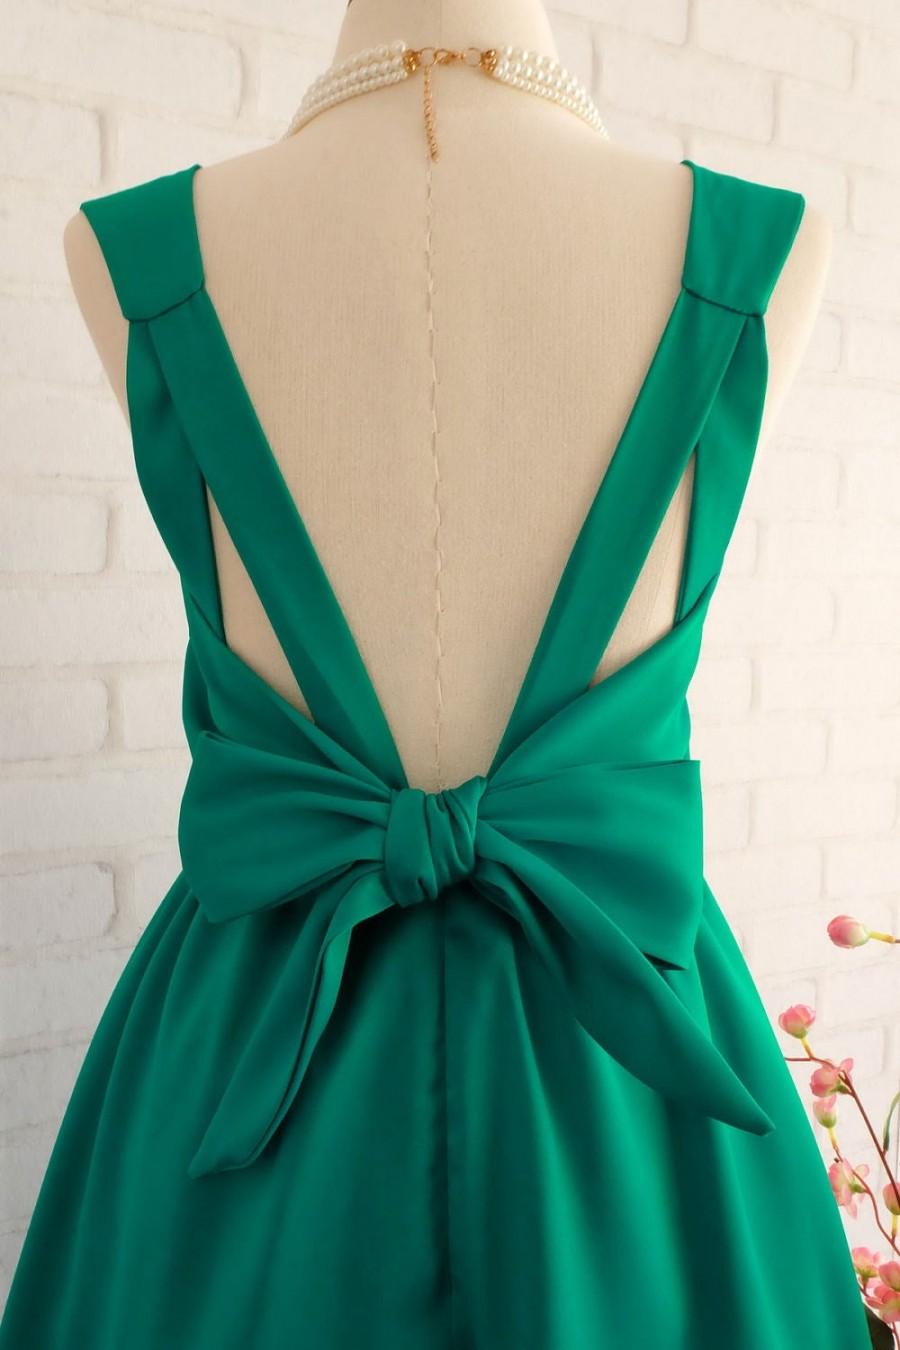 Hochzeit - Emerald Green dress green Bridesmaid dress Wedding Prom dress Cocktail Party dress Evening dress Backless bow dress